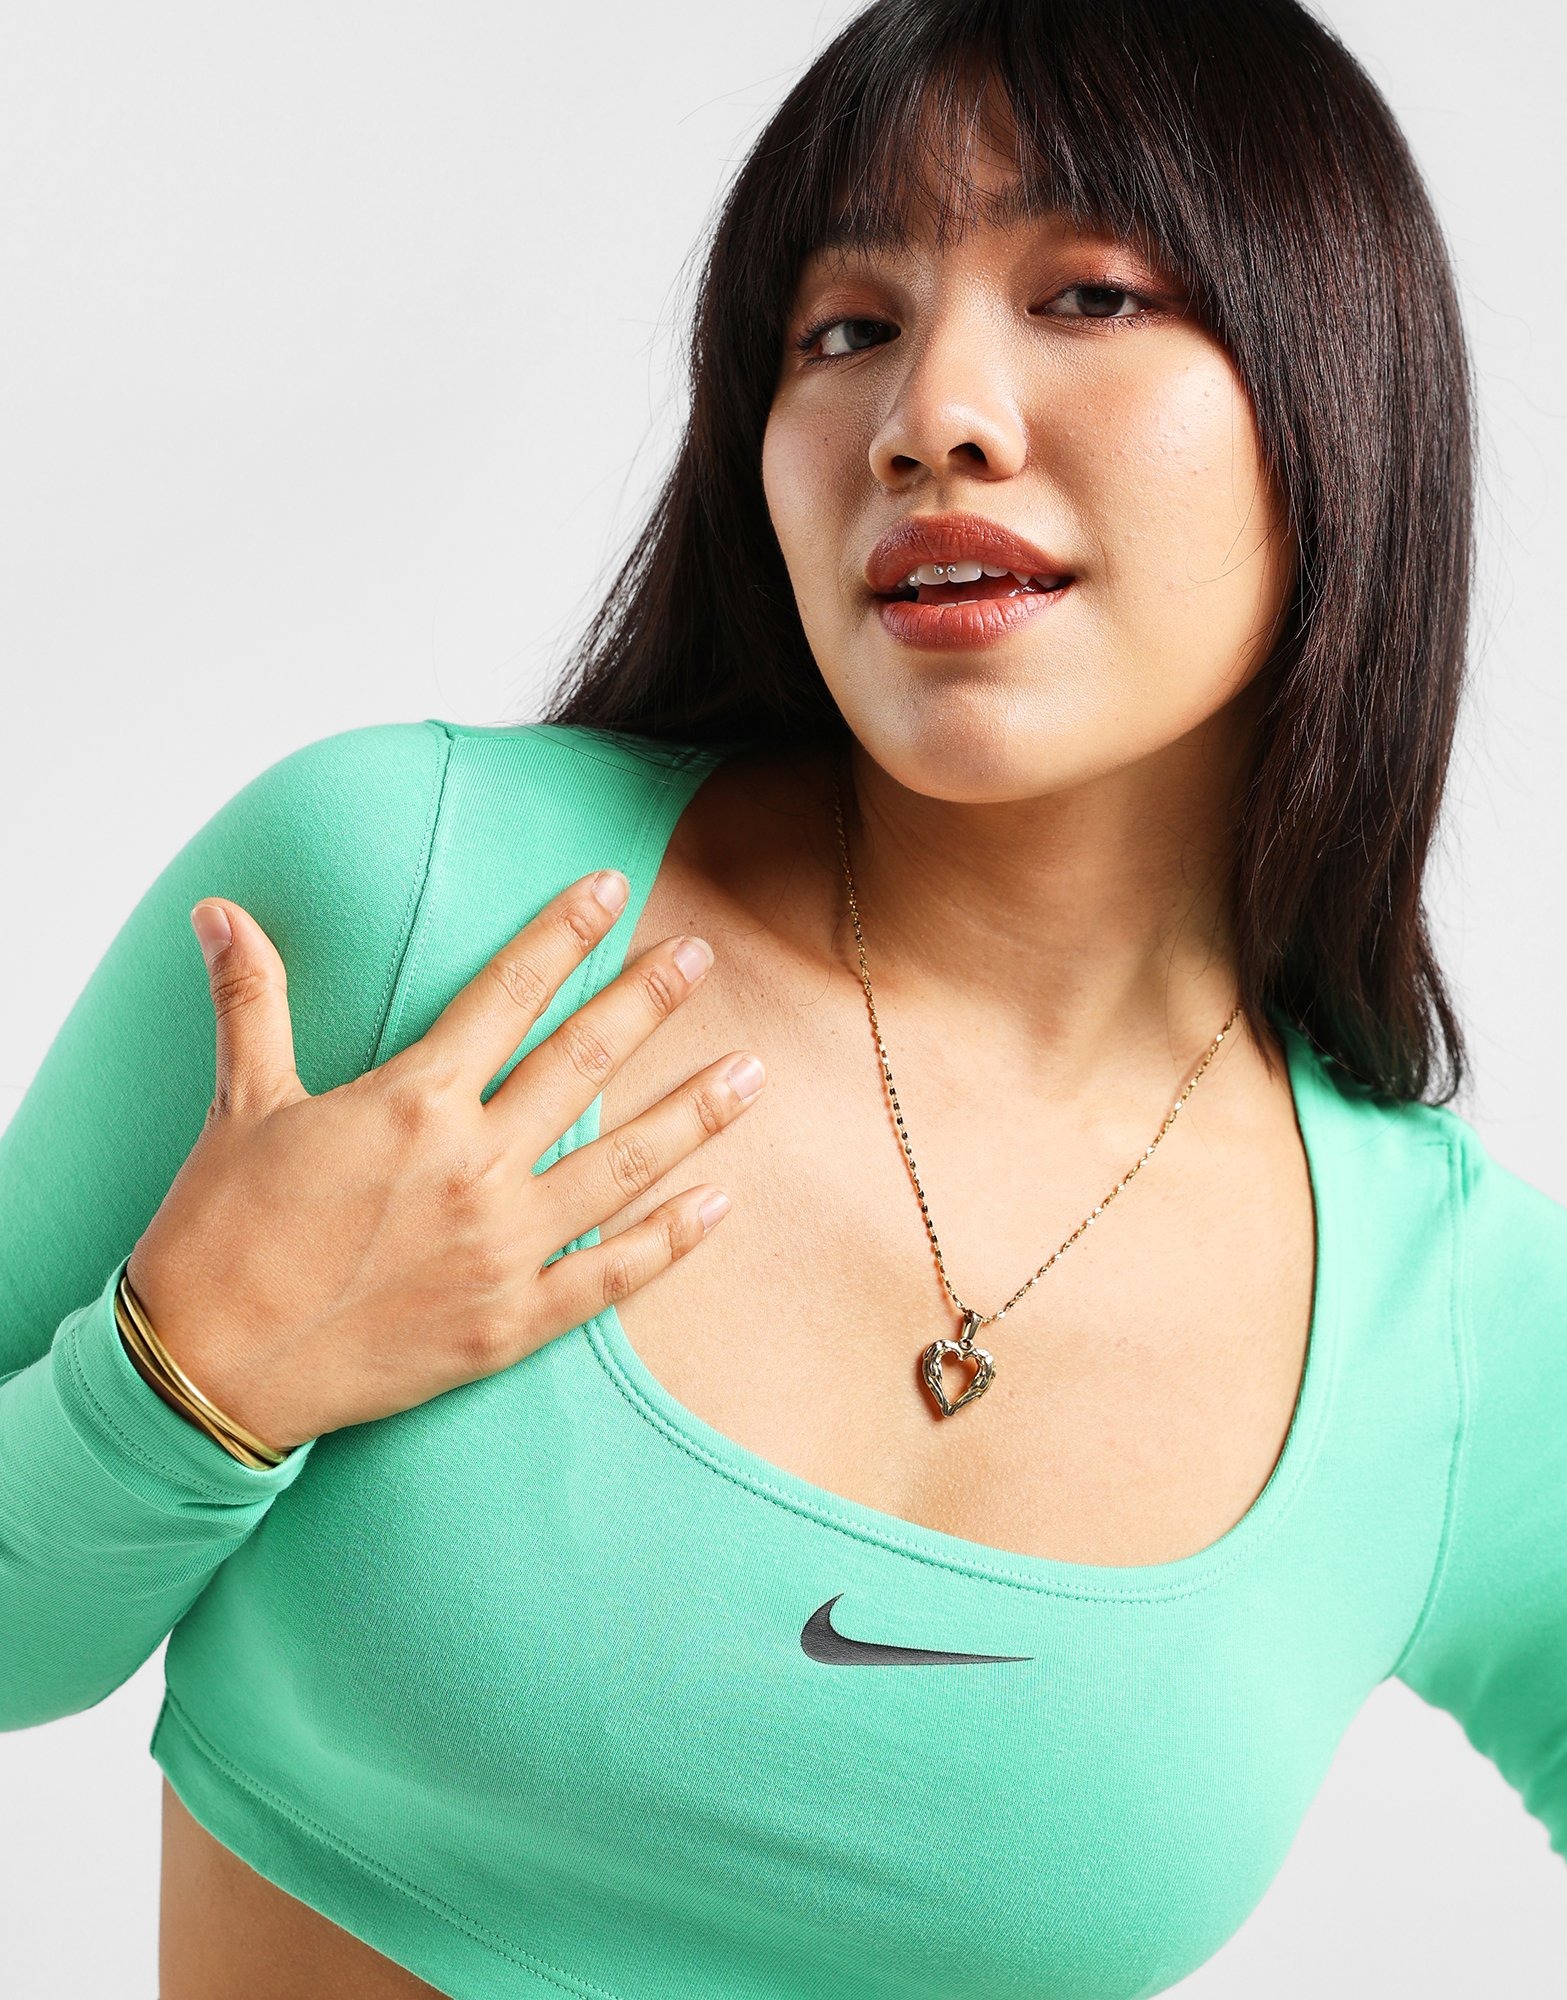 Green Nike Sportswear Long-Sleeve Crop Top Women's - JD Sports Singapore